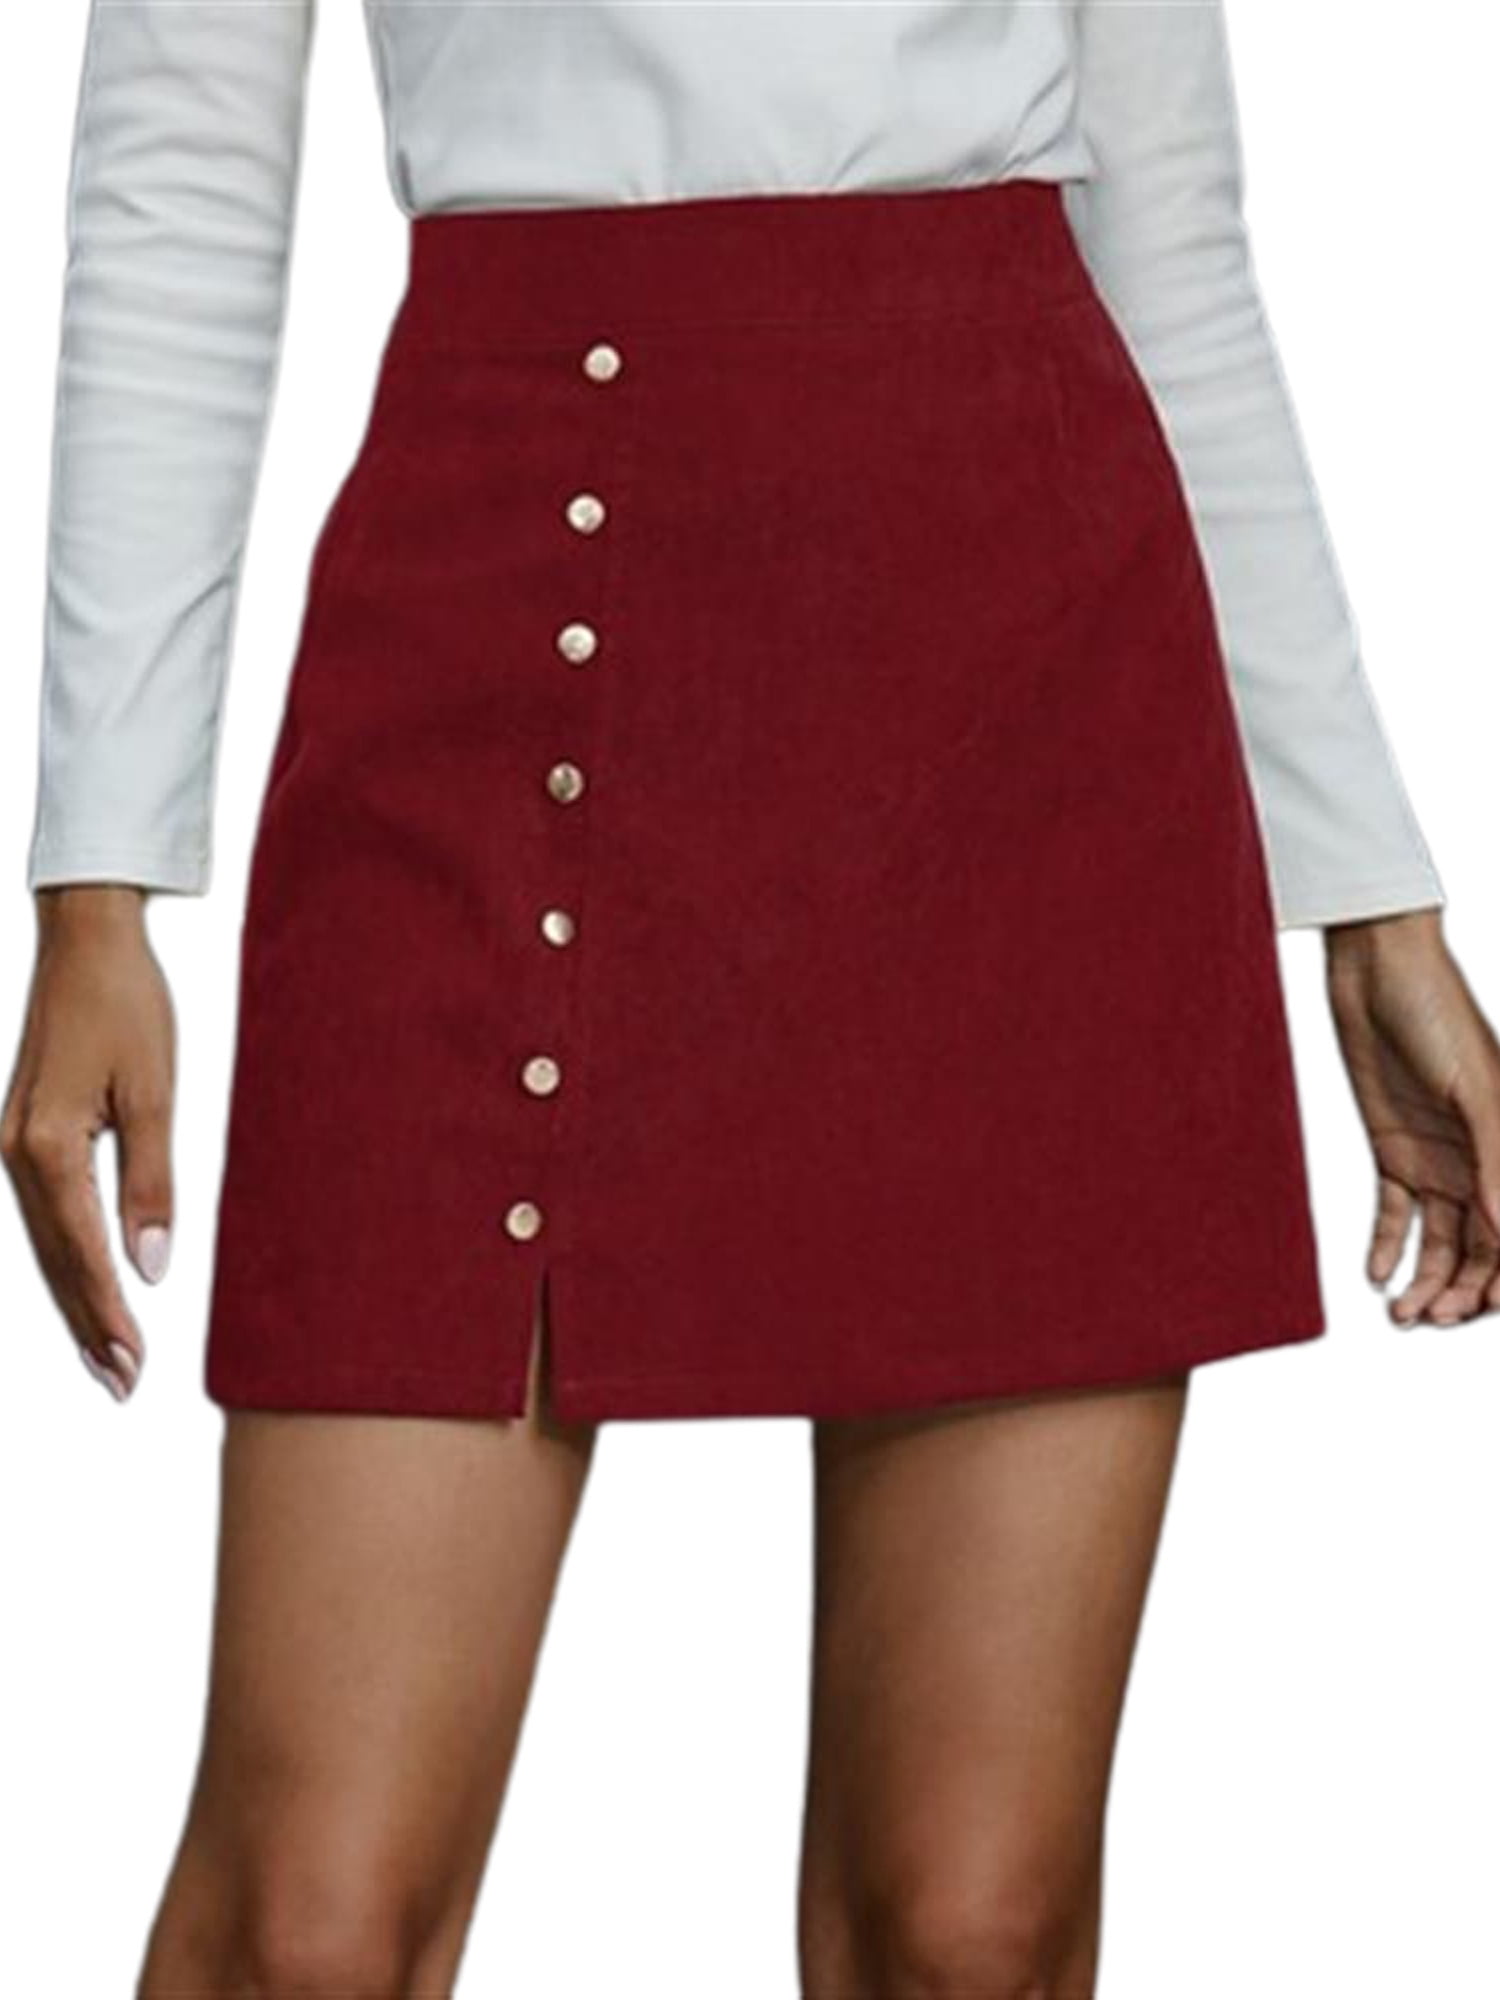 Tapsier Women High Waist A-line Mini Skirts Buttons Side Split Skirt Wine  Red L - Walmart.com